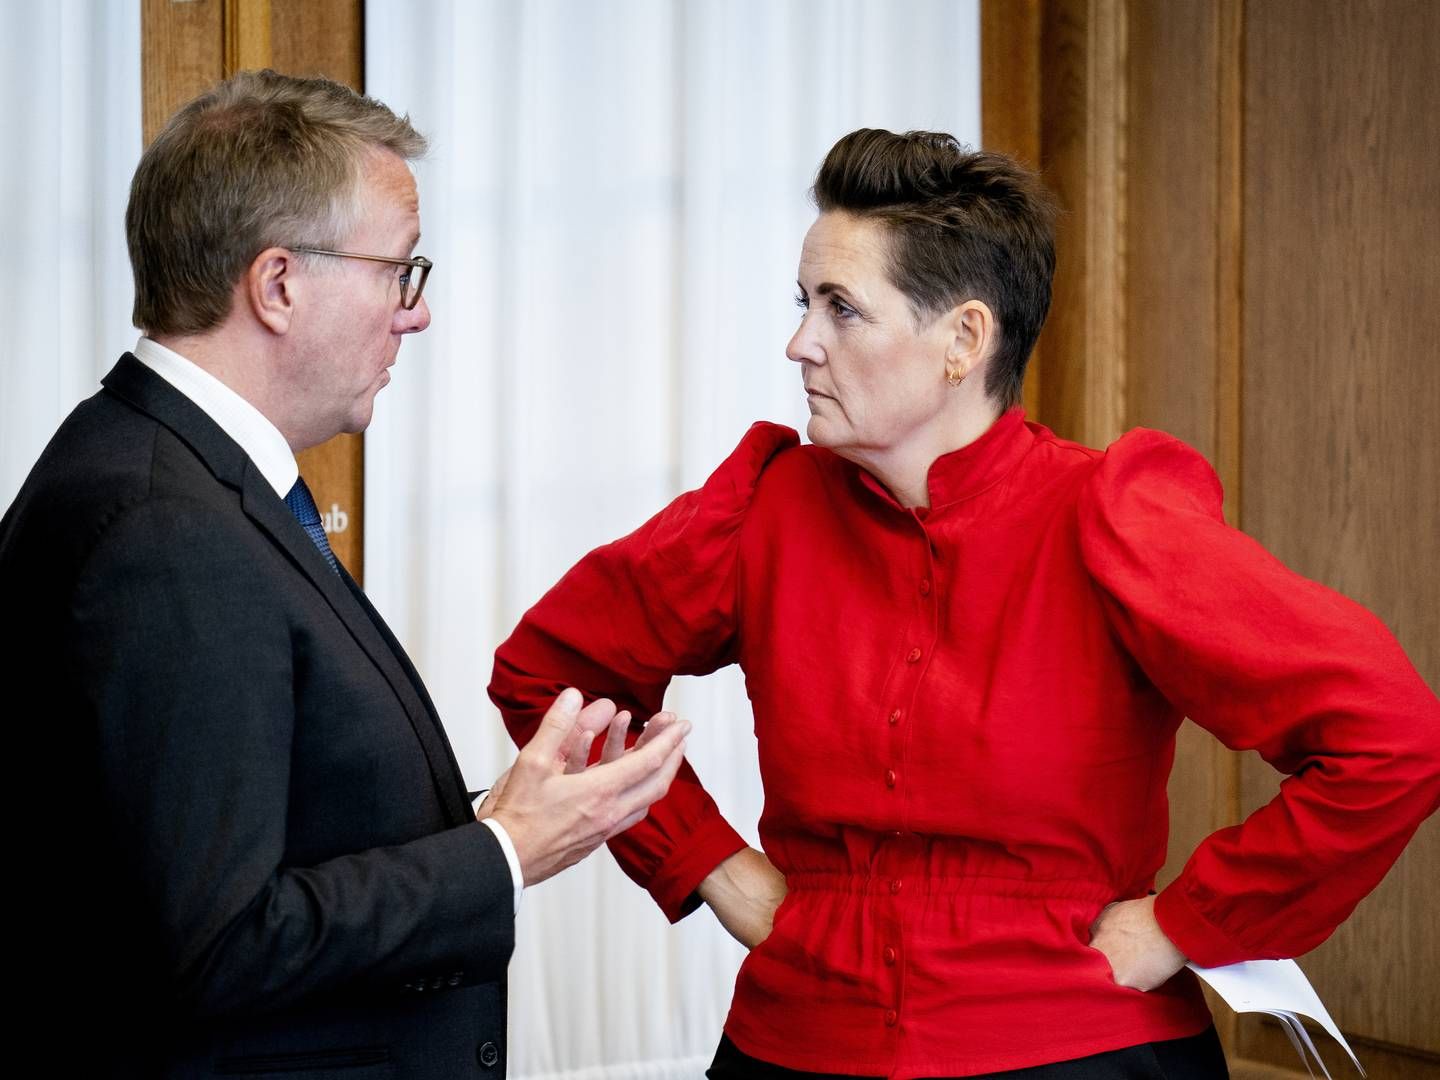 Resultatet af dagens folkeafstemning er en forløsning, siger forsvarsminister Morten Bødskov (S). | Foto: LISELOTTE SABROE